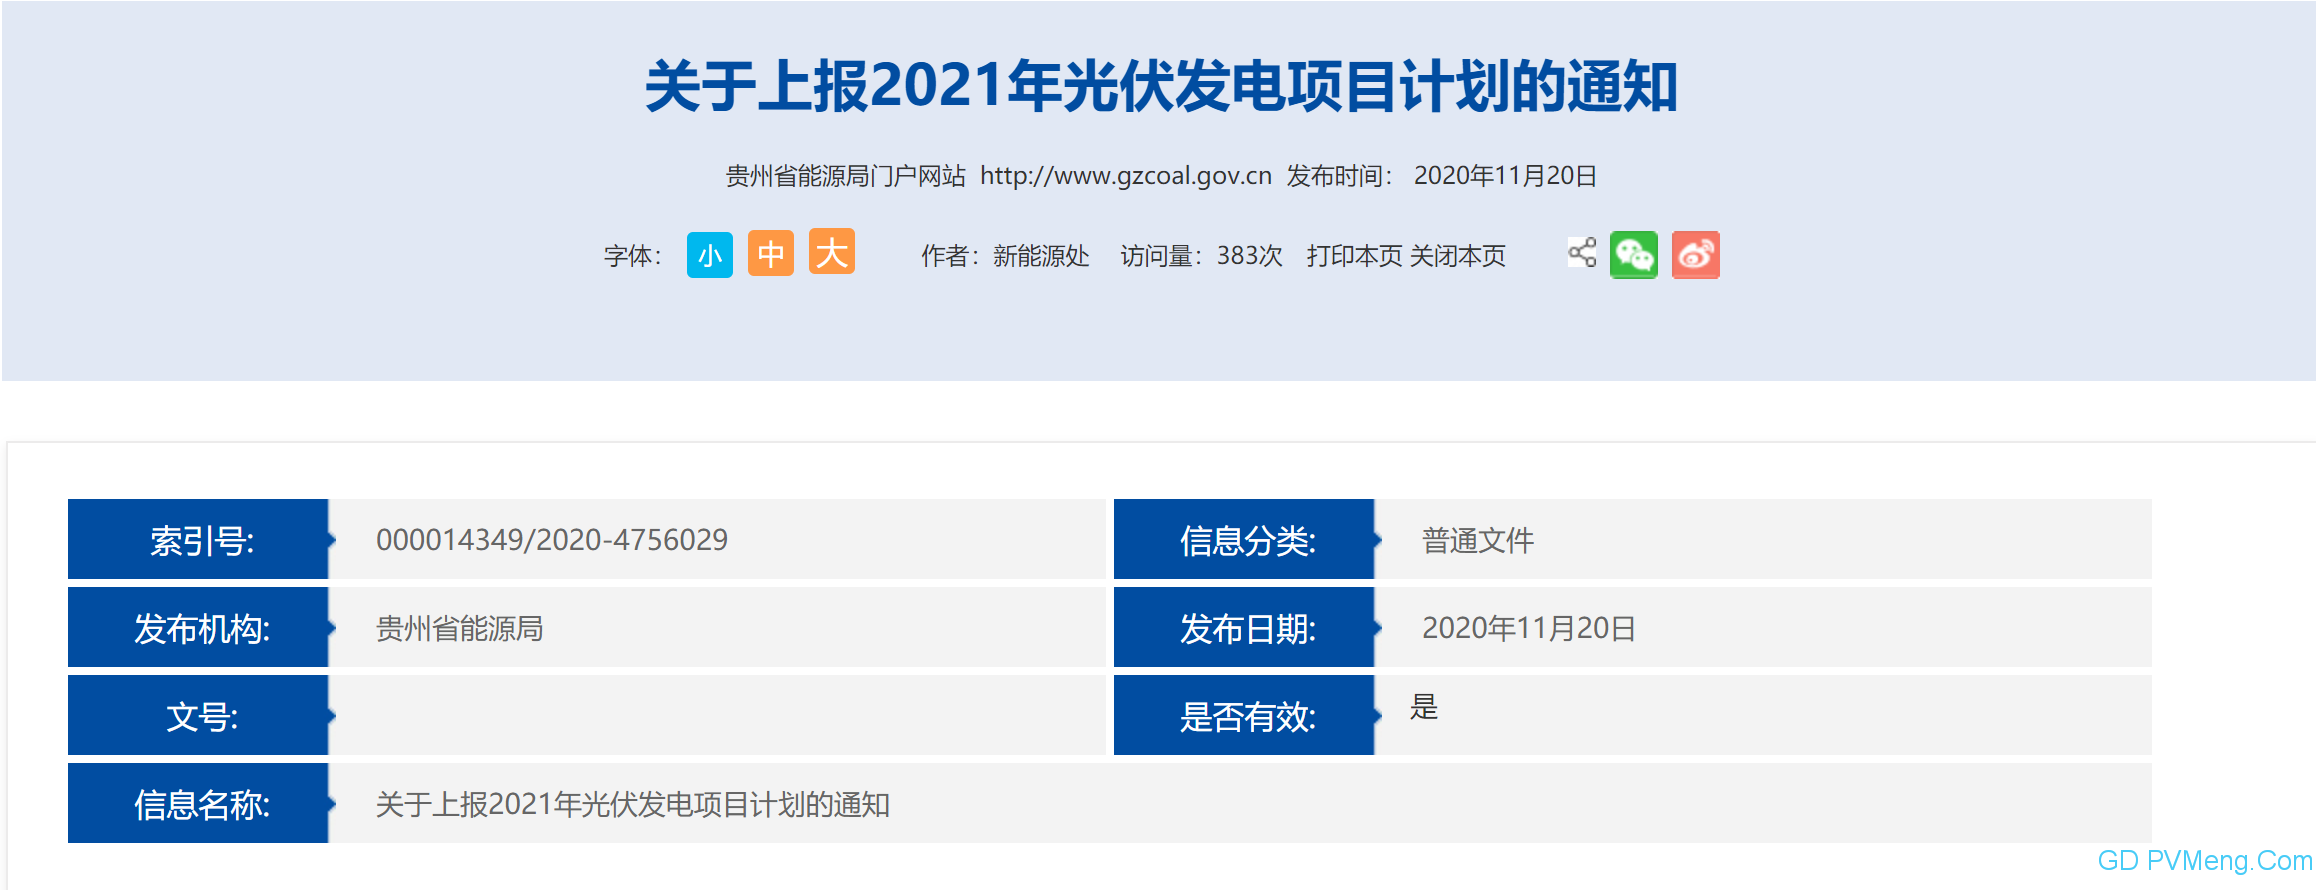 贵州省能源局关于上报2021年光伏发电项目计划的通知 20201119